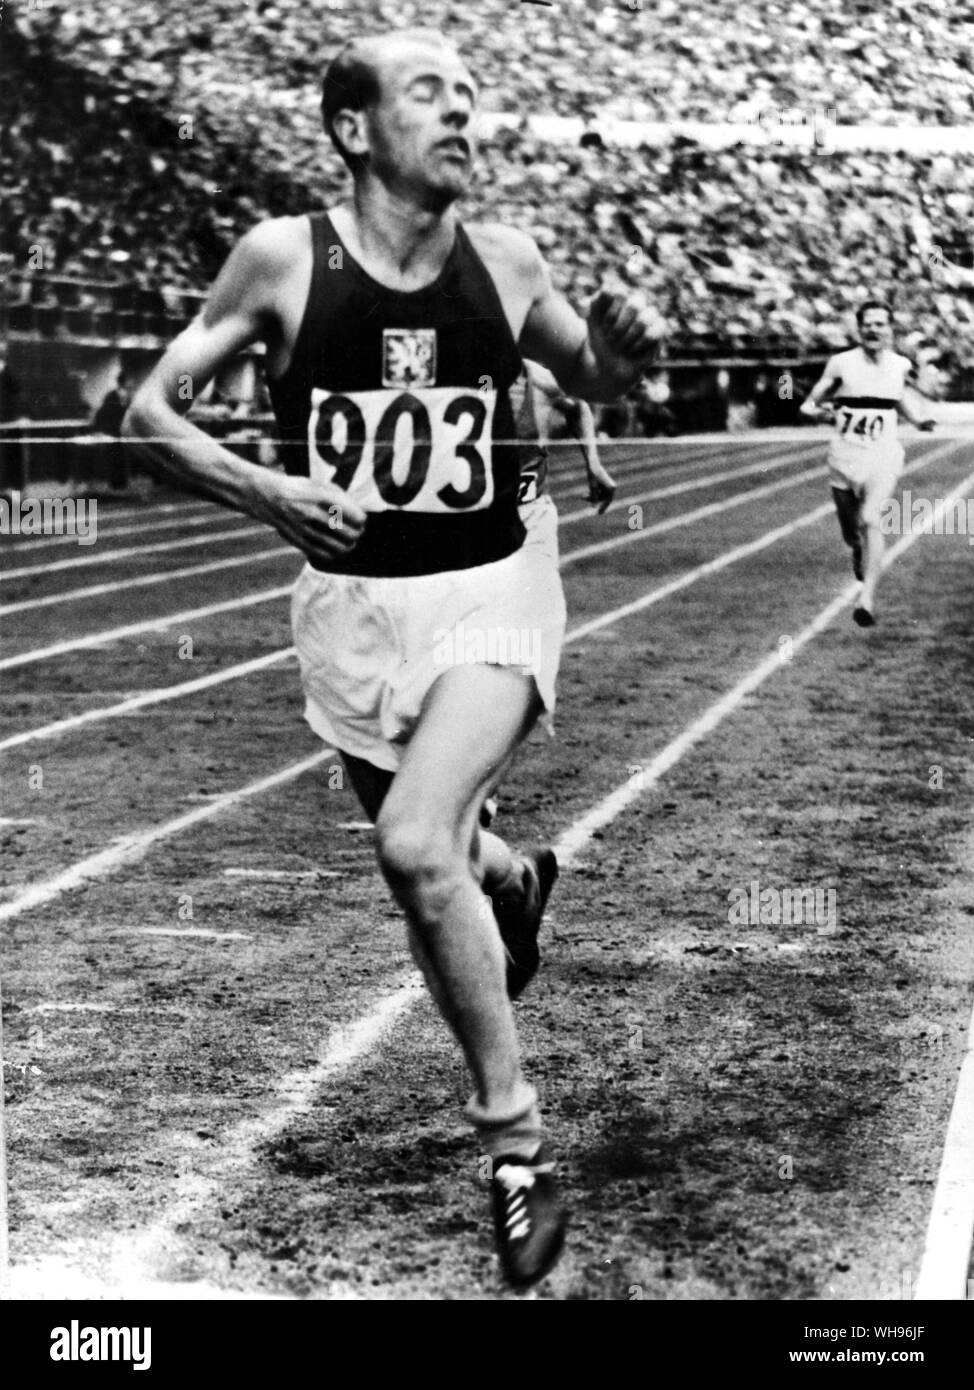 Finnland, Helsinki/Olympics, 1952: Emil Zatopek der Tschechoslowakei, Gewinner von vier Goldmedaillen gewinnt die 5000 Meter. Stockfoto